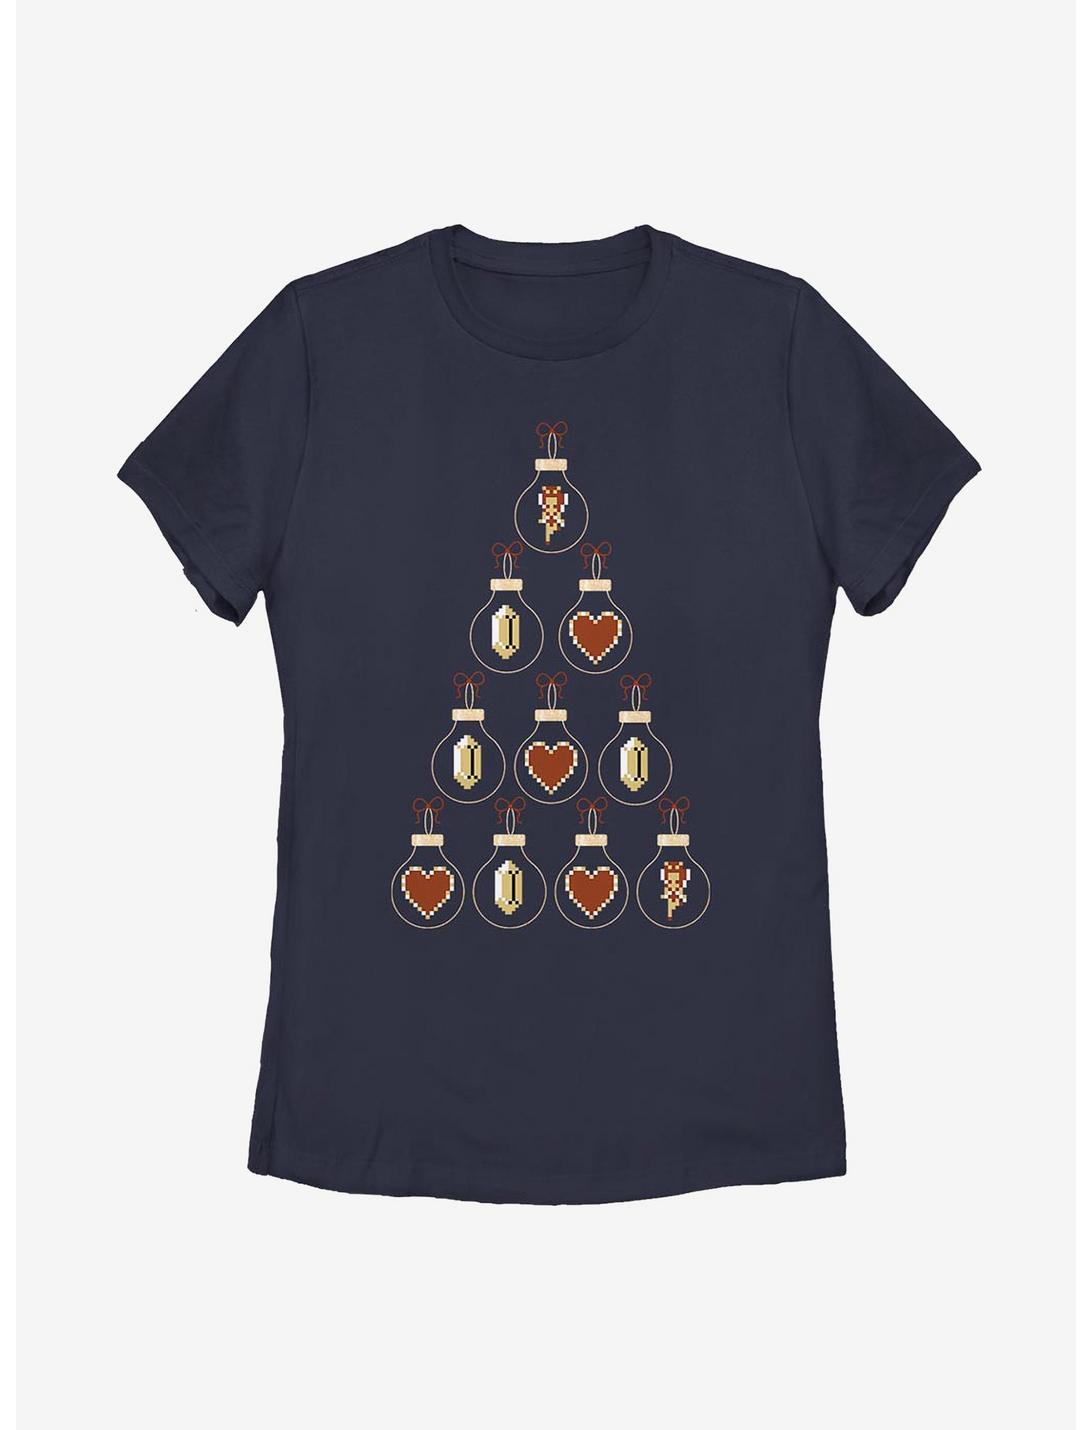 Nintendo The Legend Of Zelda Pixel Christmas Tree Womens T-Shirt, NAVY, hi-res